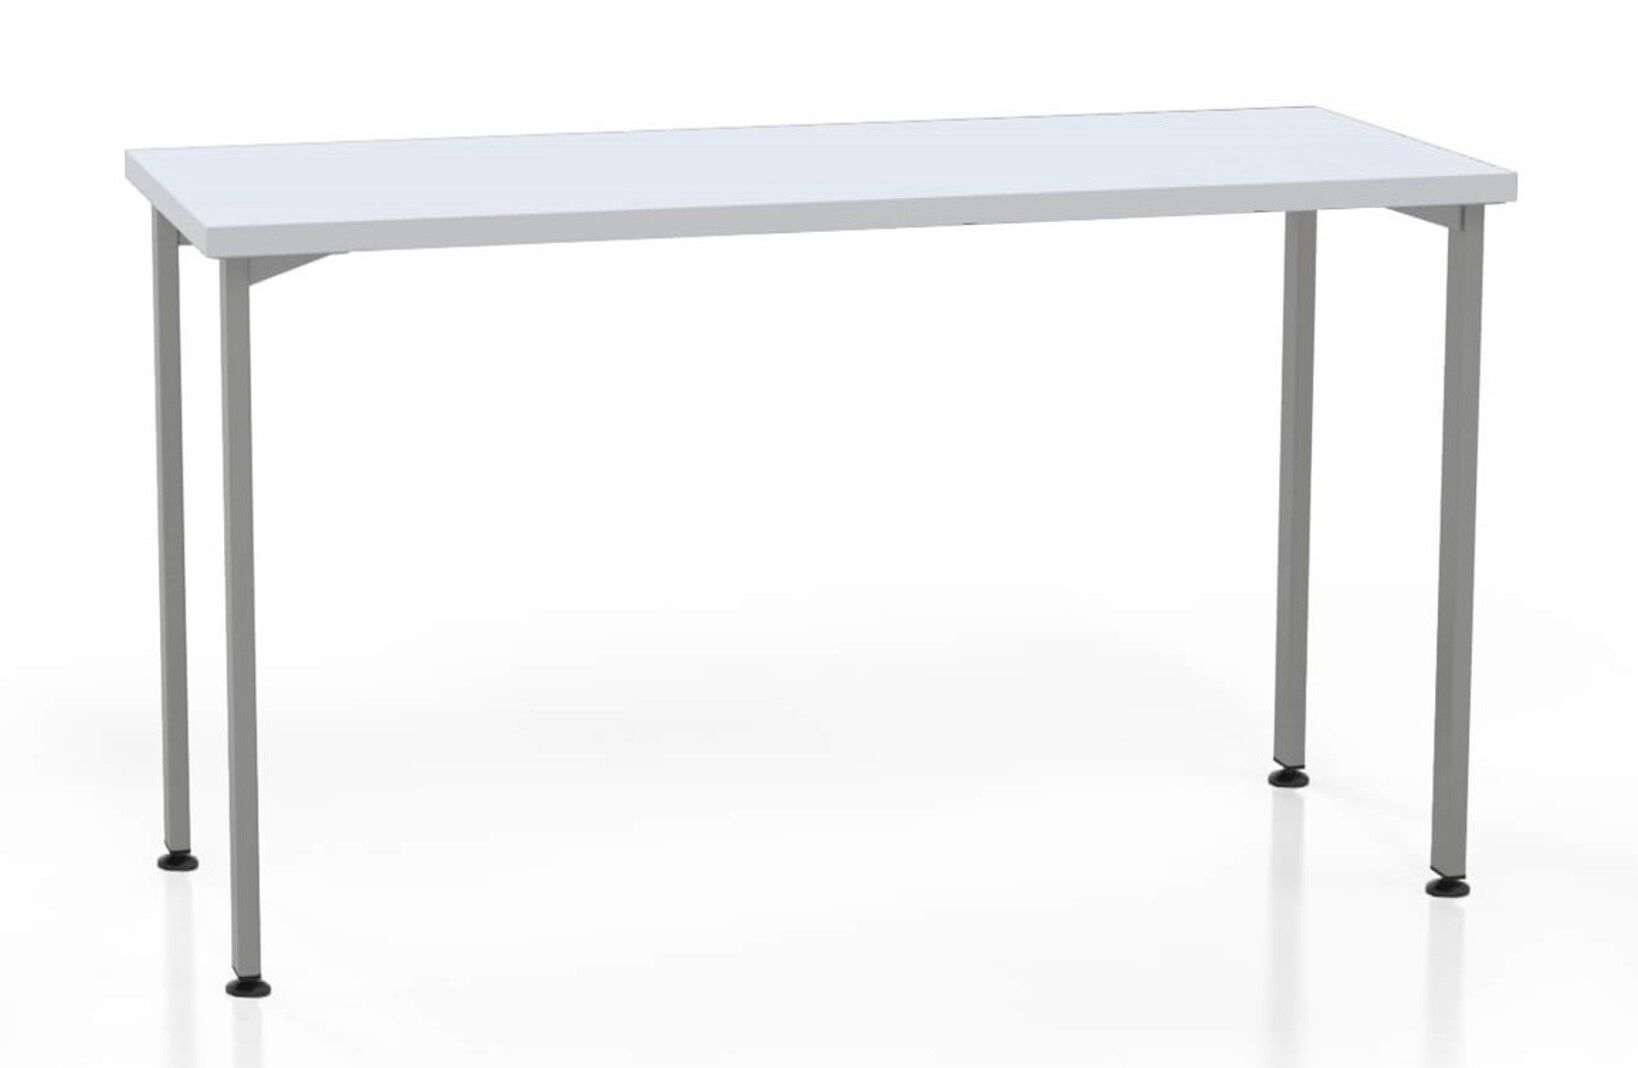 L shaped table desk desk_preview